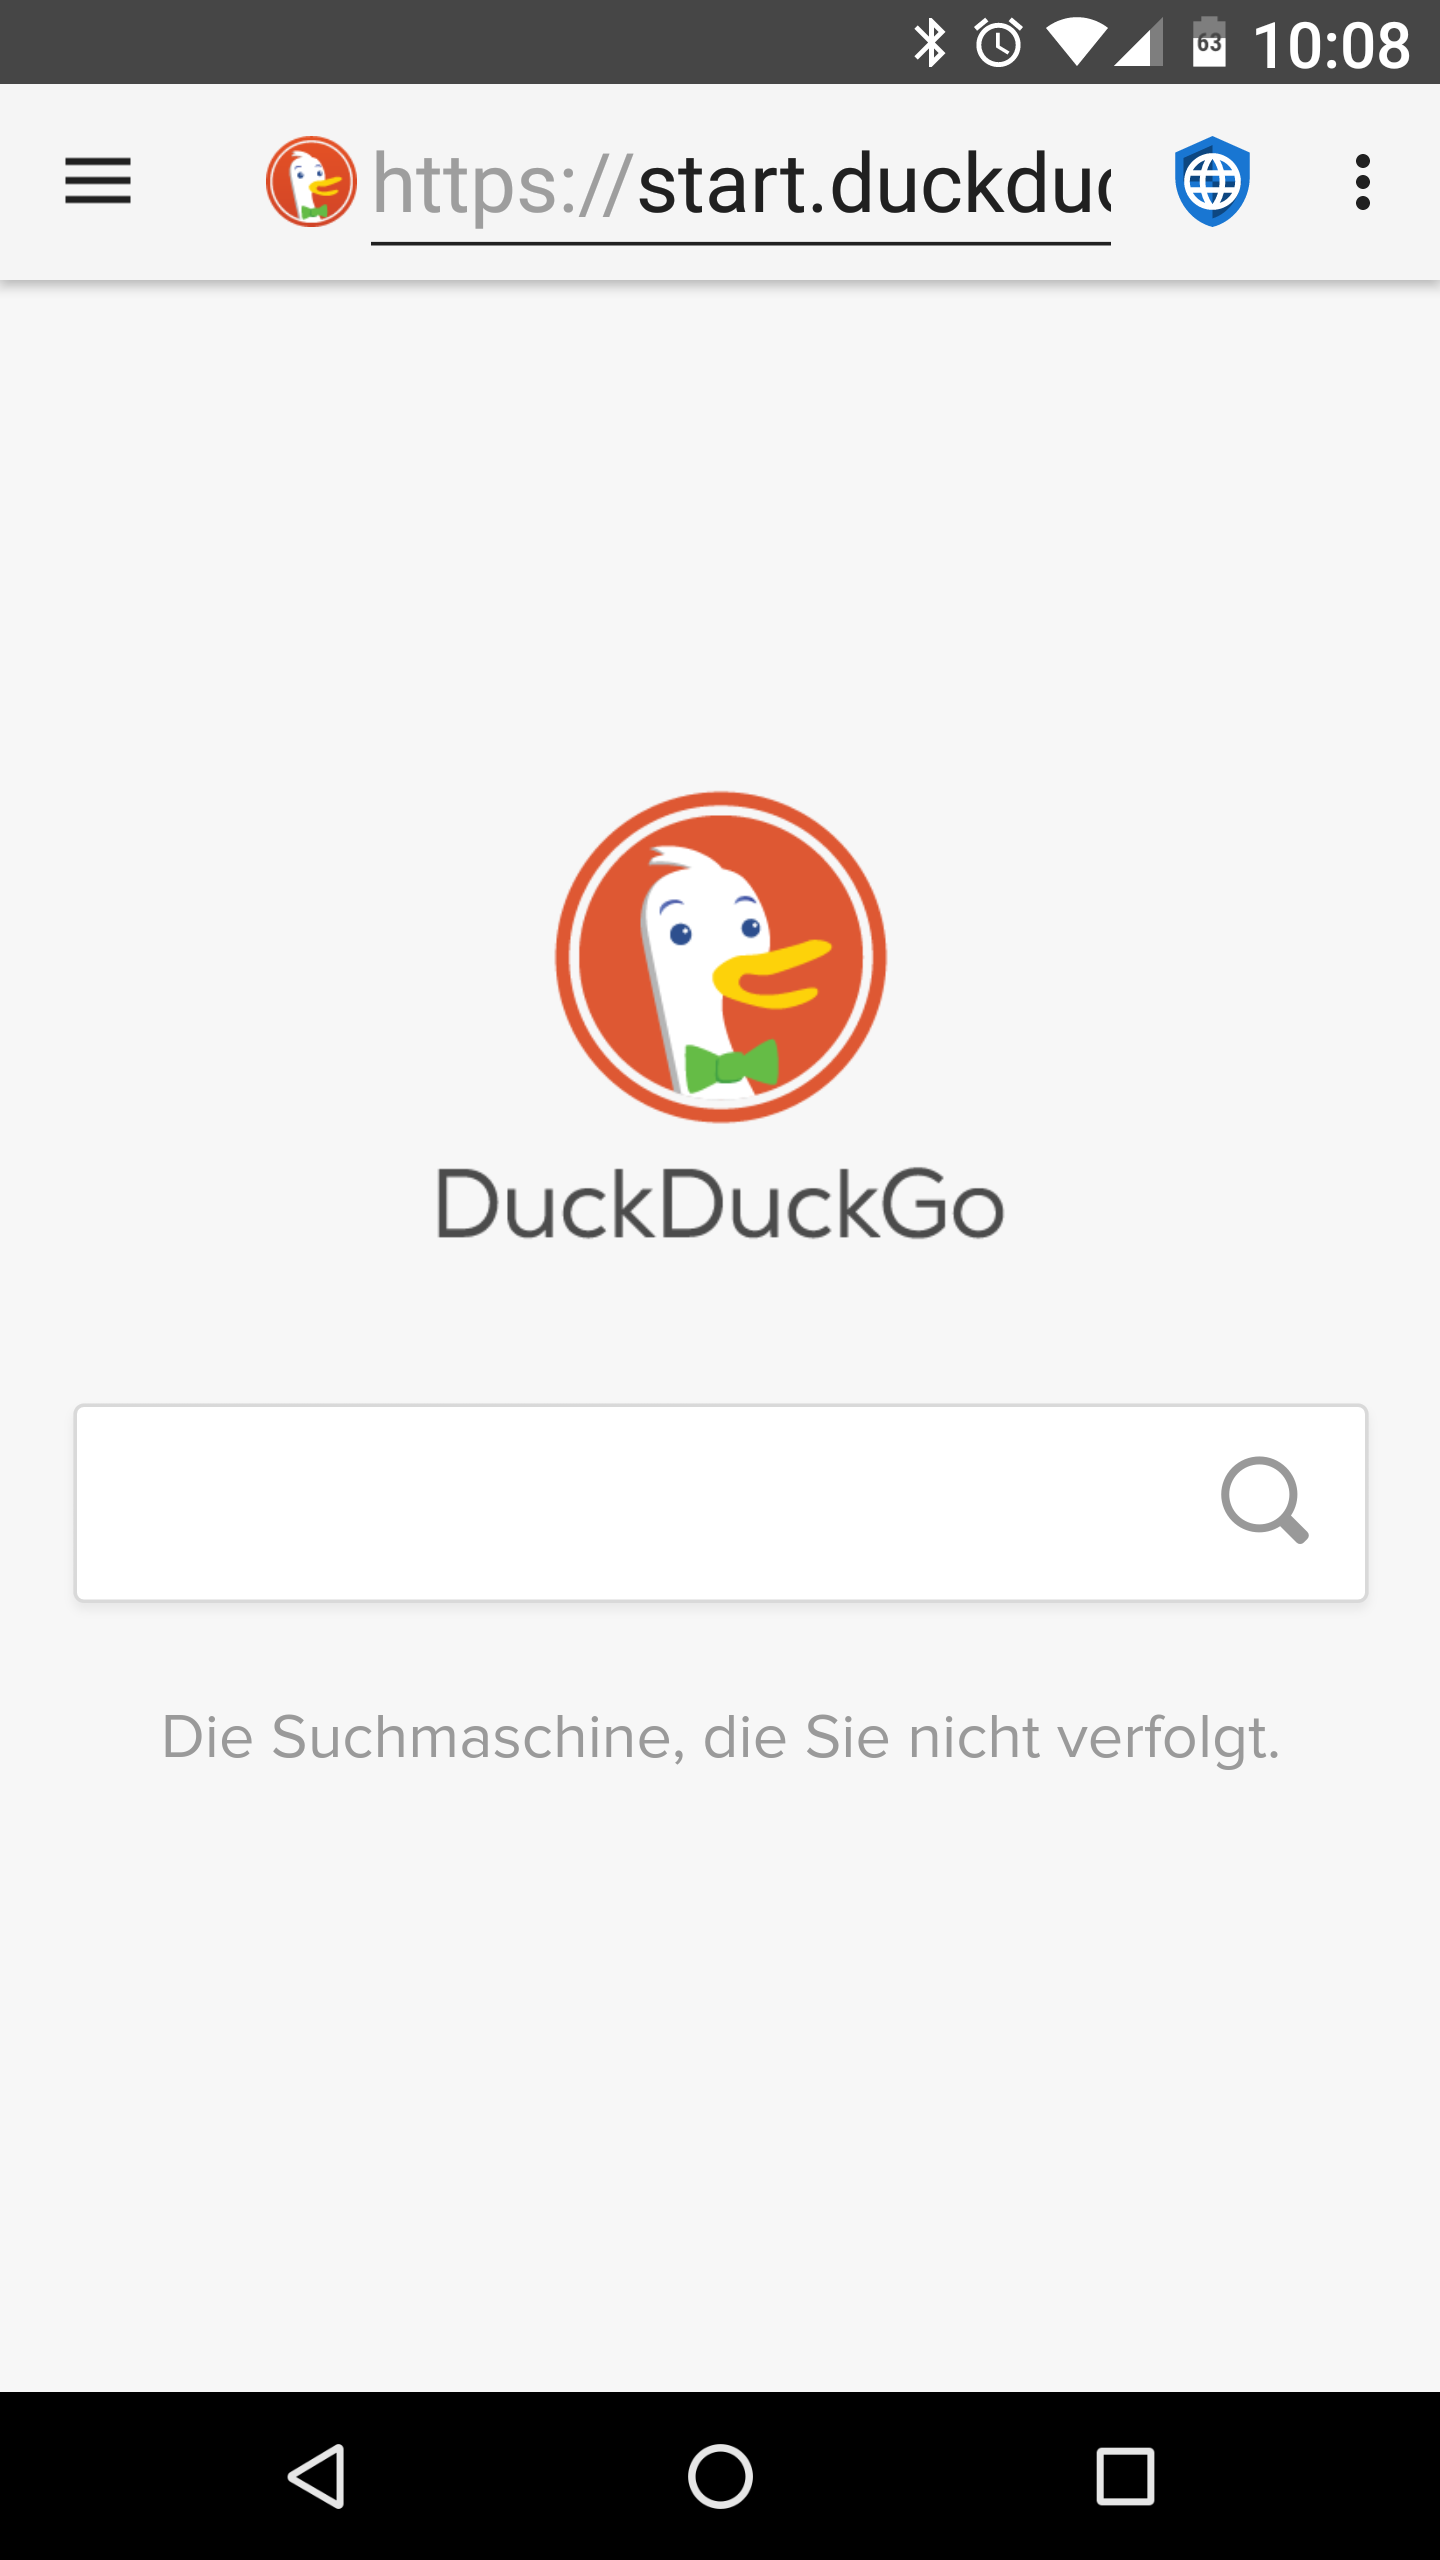 fastlane/metadata/android/de/images/phoneScreenshots/01-DuckDuckGo.png